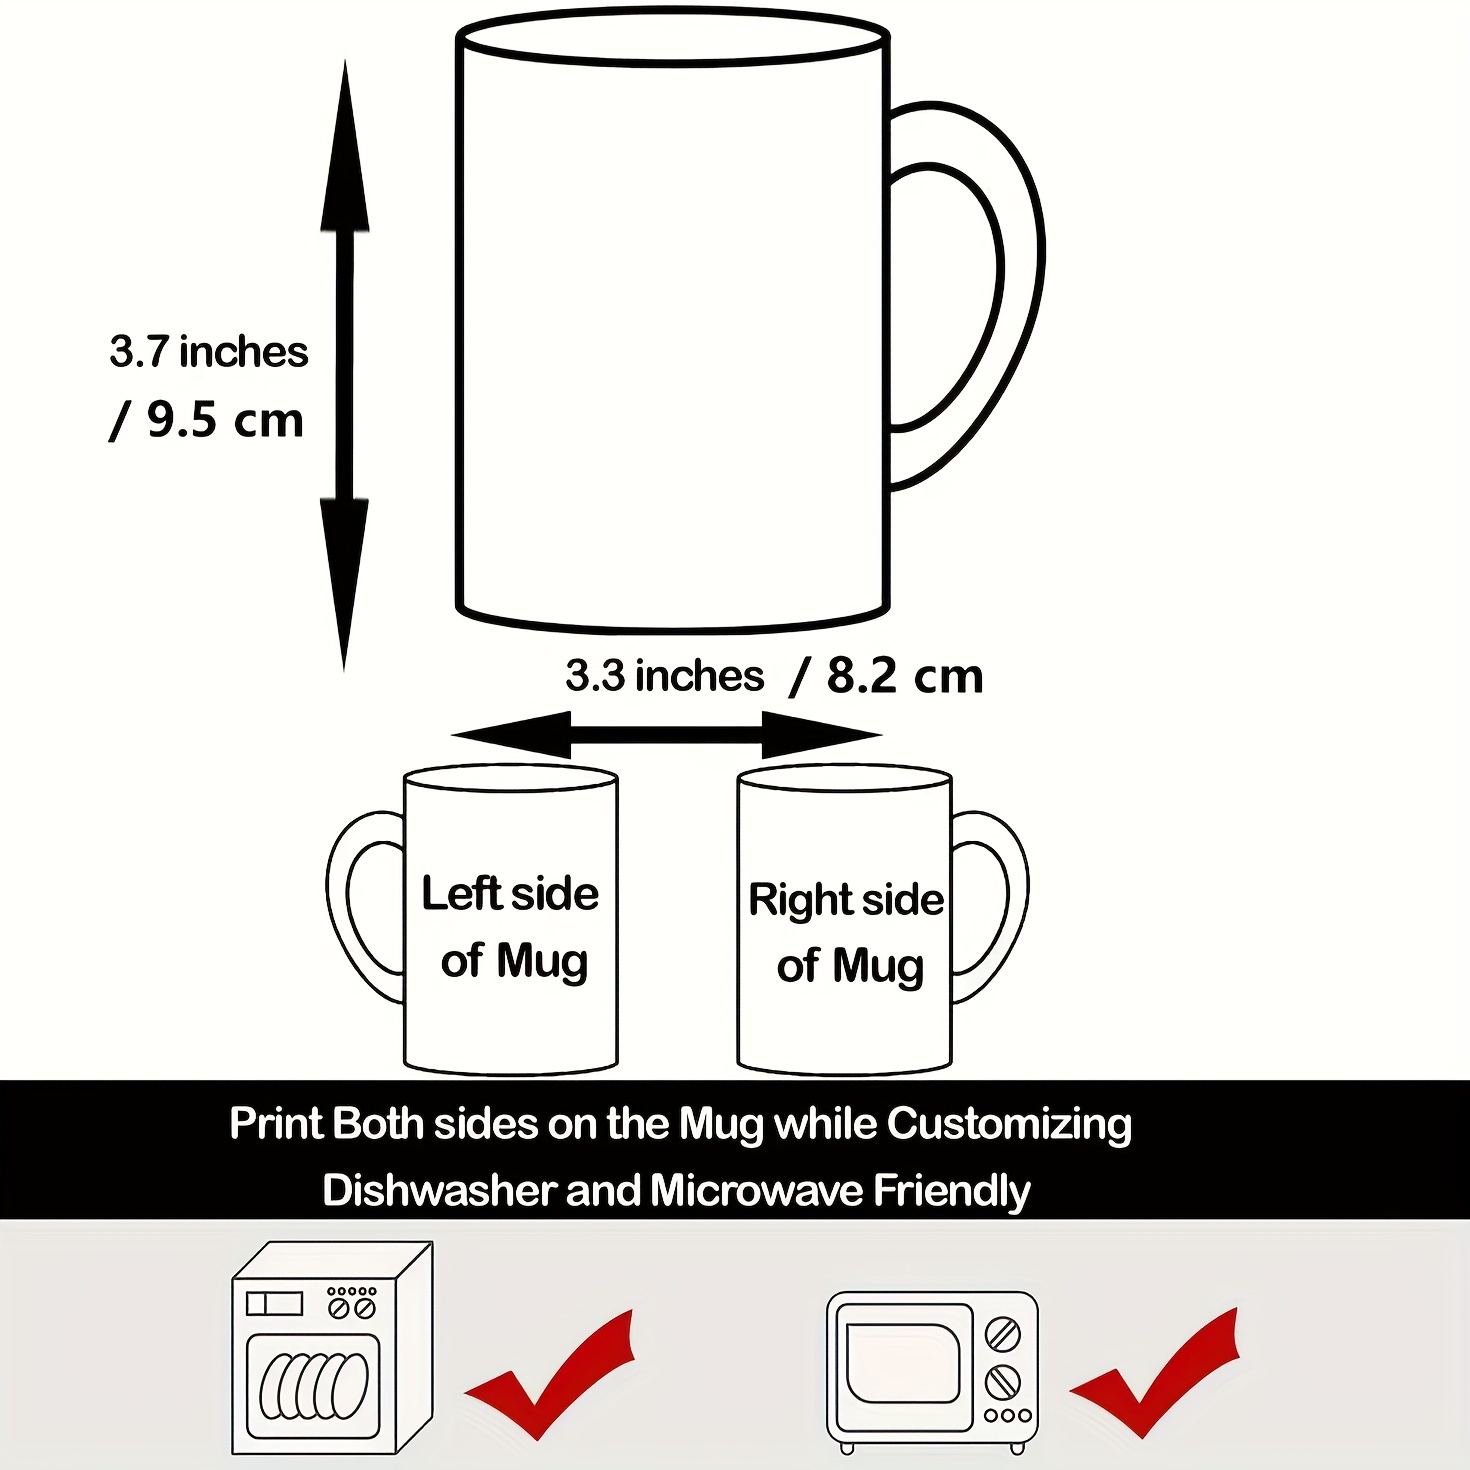 Funny Mugs With Sayings to Do List Coffee Mug Funny Gift for